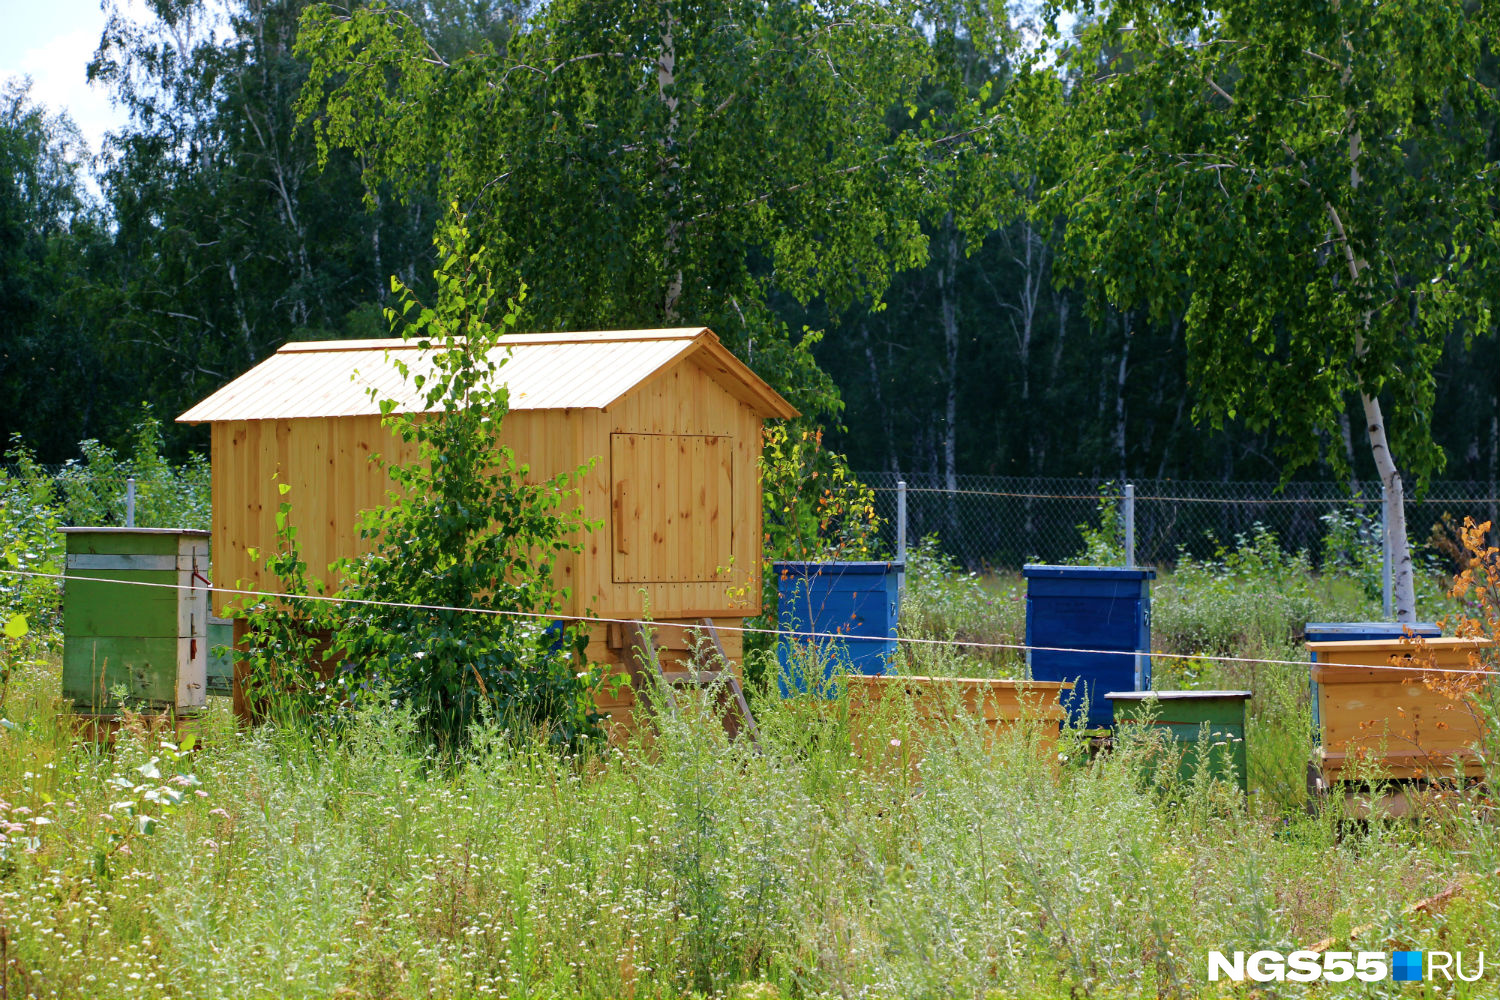 Пчелиные ульи окружают деревянный домик — там гостям предлагают переночевать